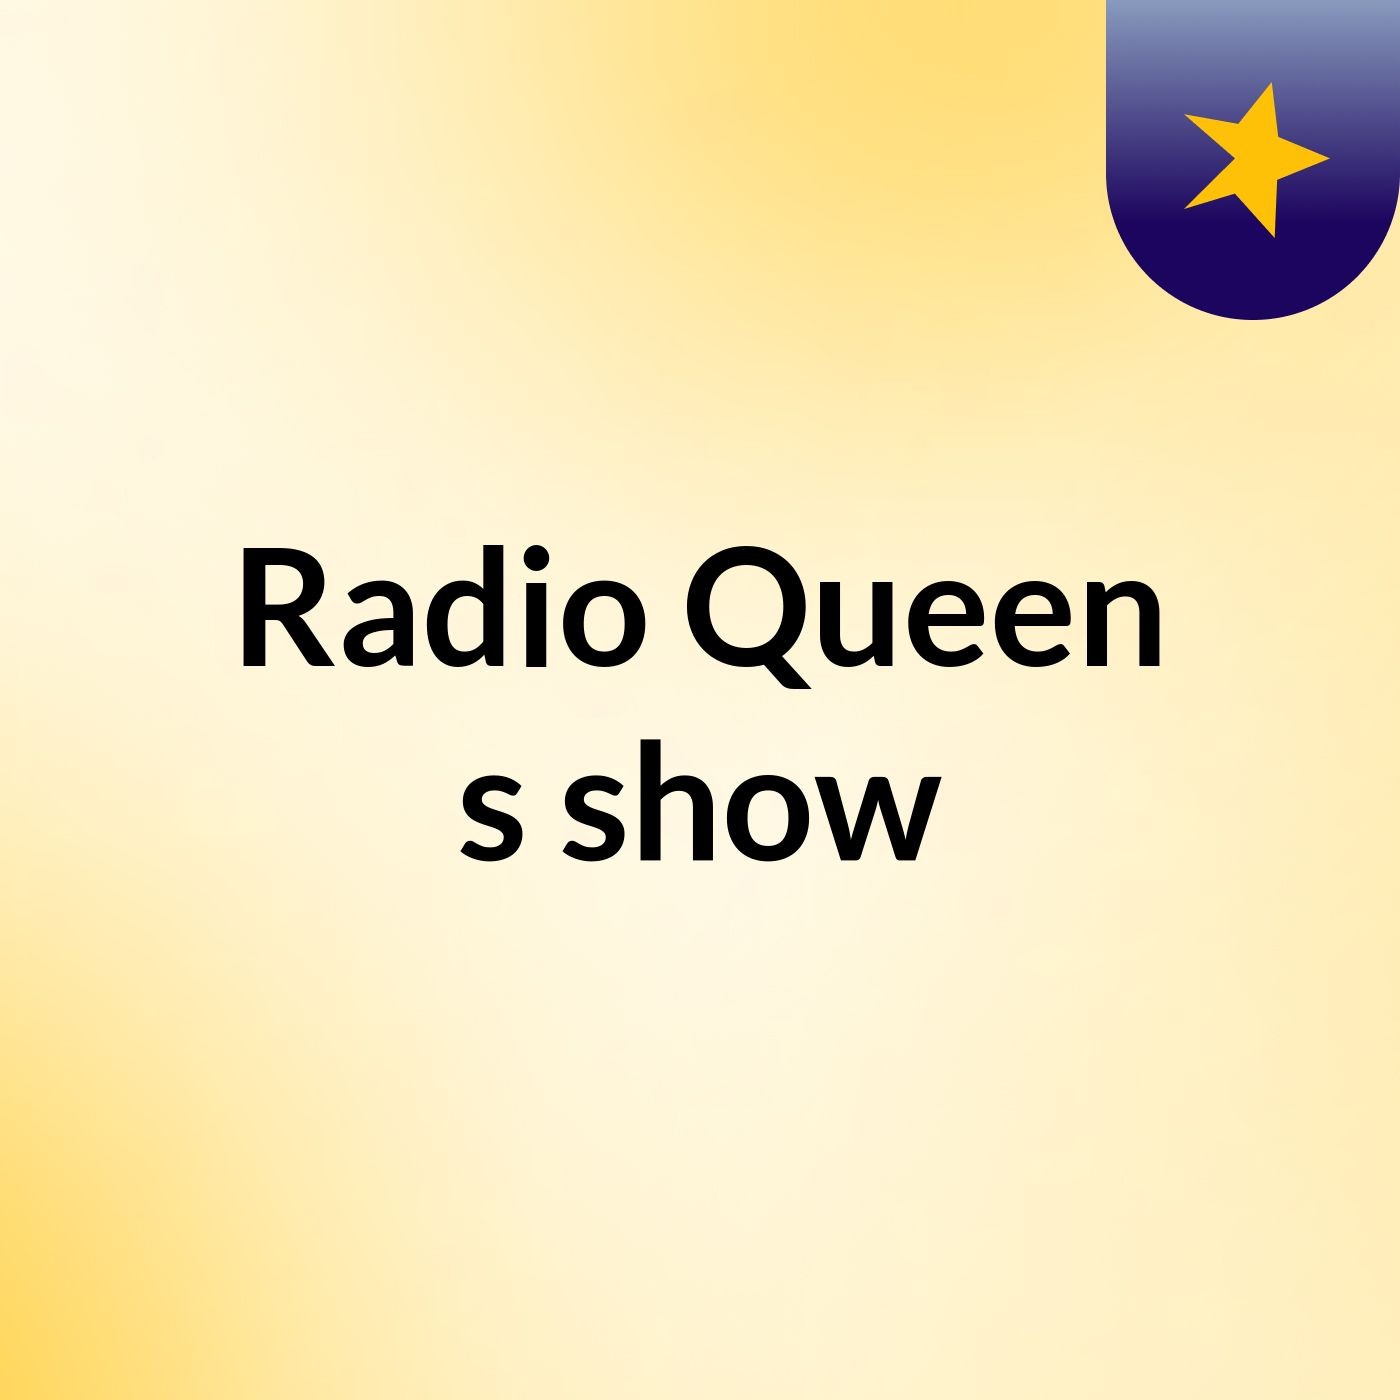 Radio Queen's show